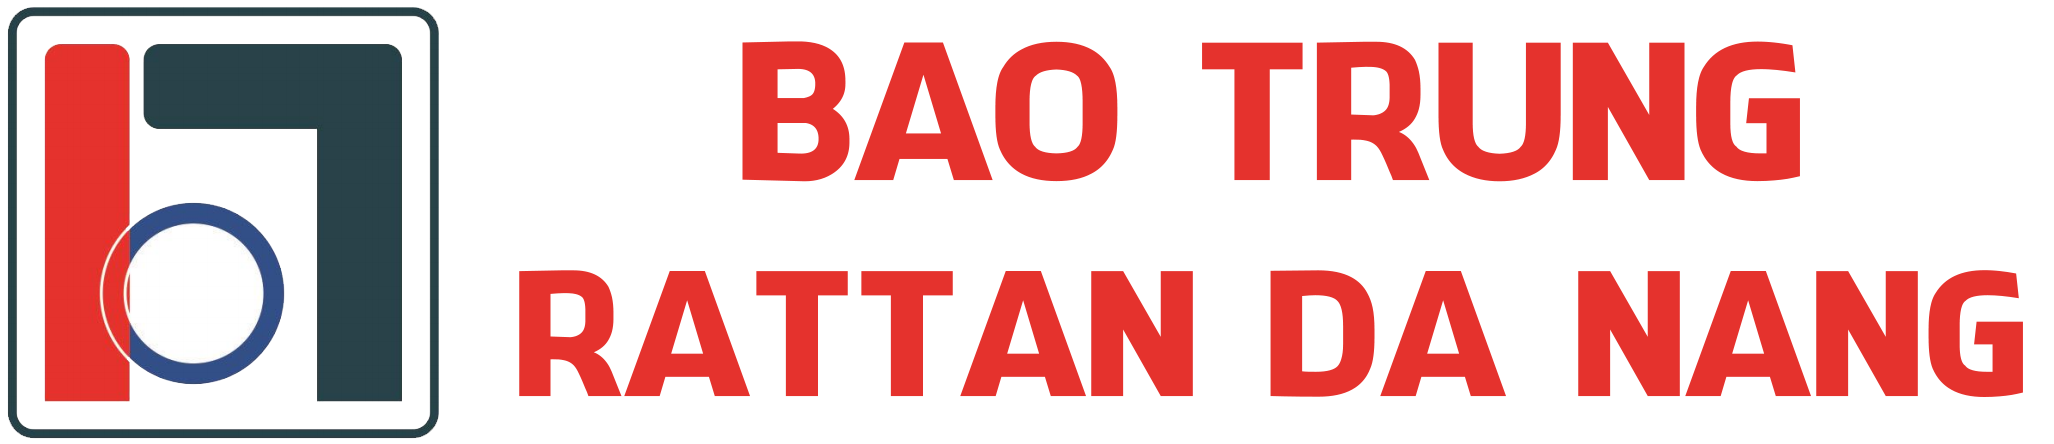 Bao Trung Rattan